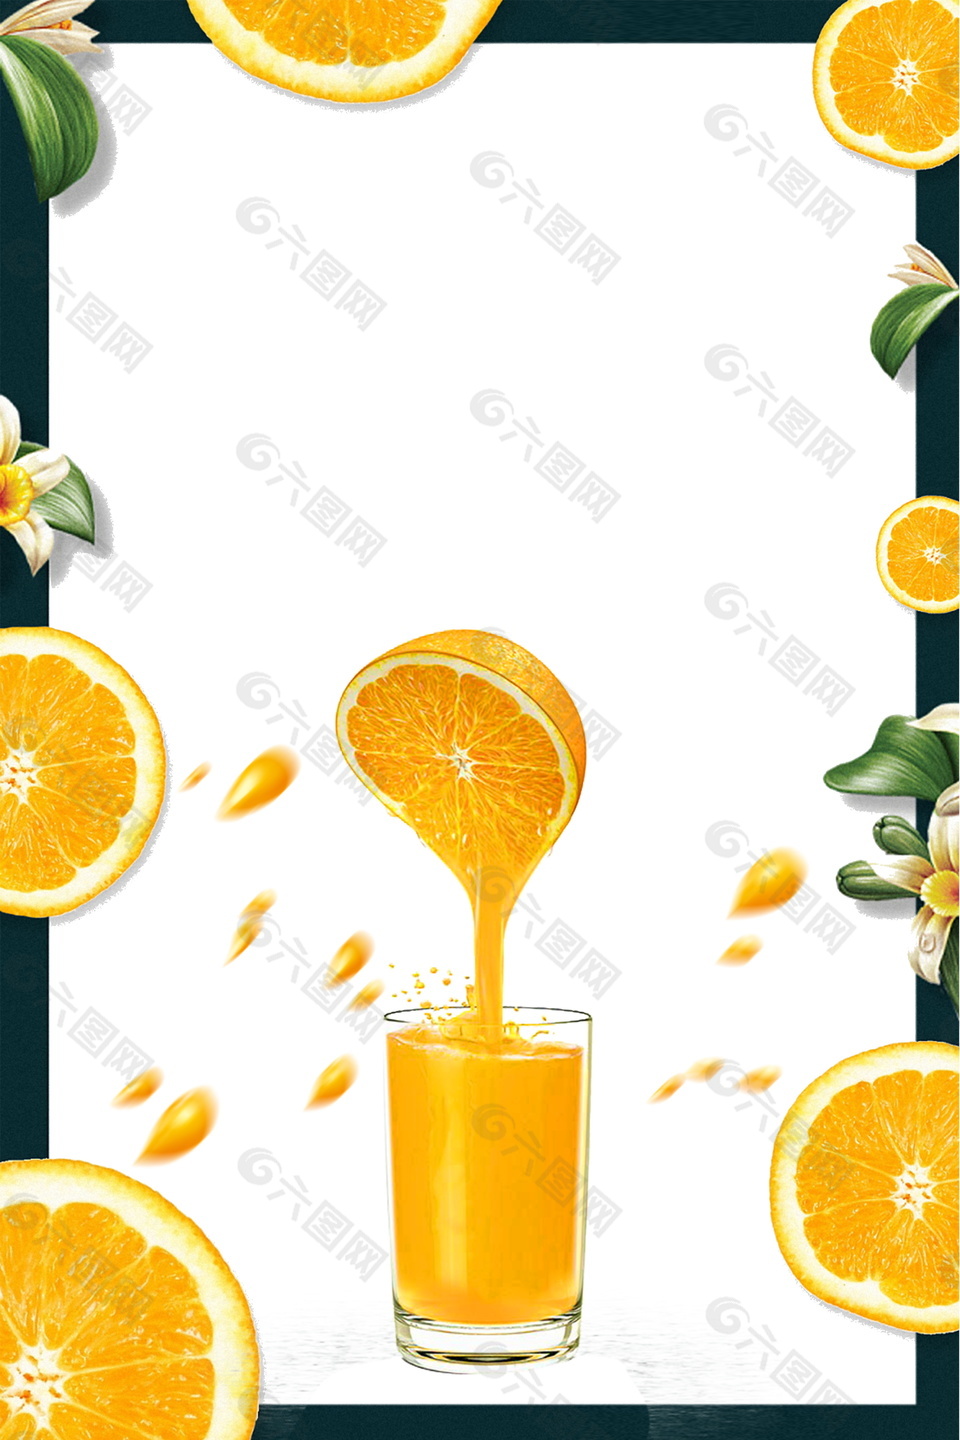 创意夏日美味橙汁饮料边框海报背景素材